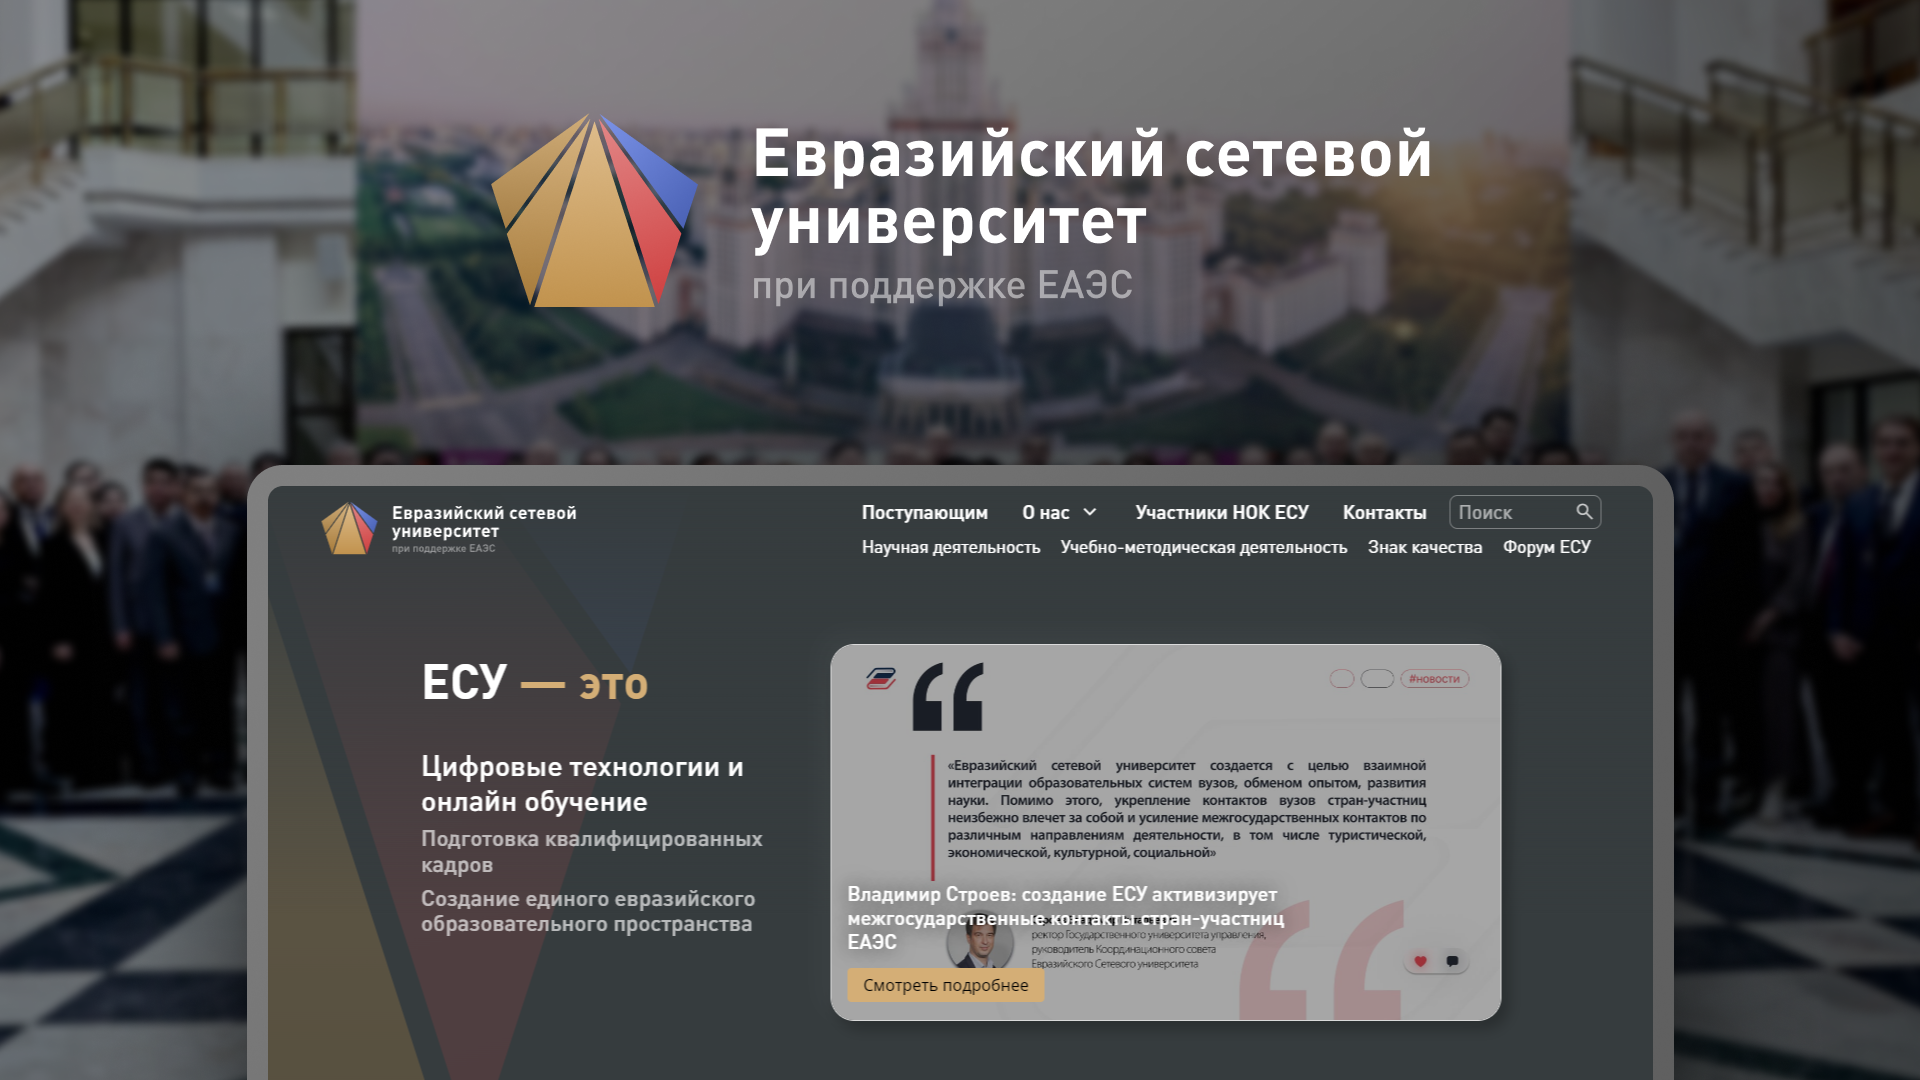 Фото логотипа Евразийского сетевого университета и демонстрация веб-сайта